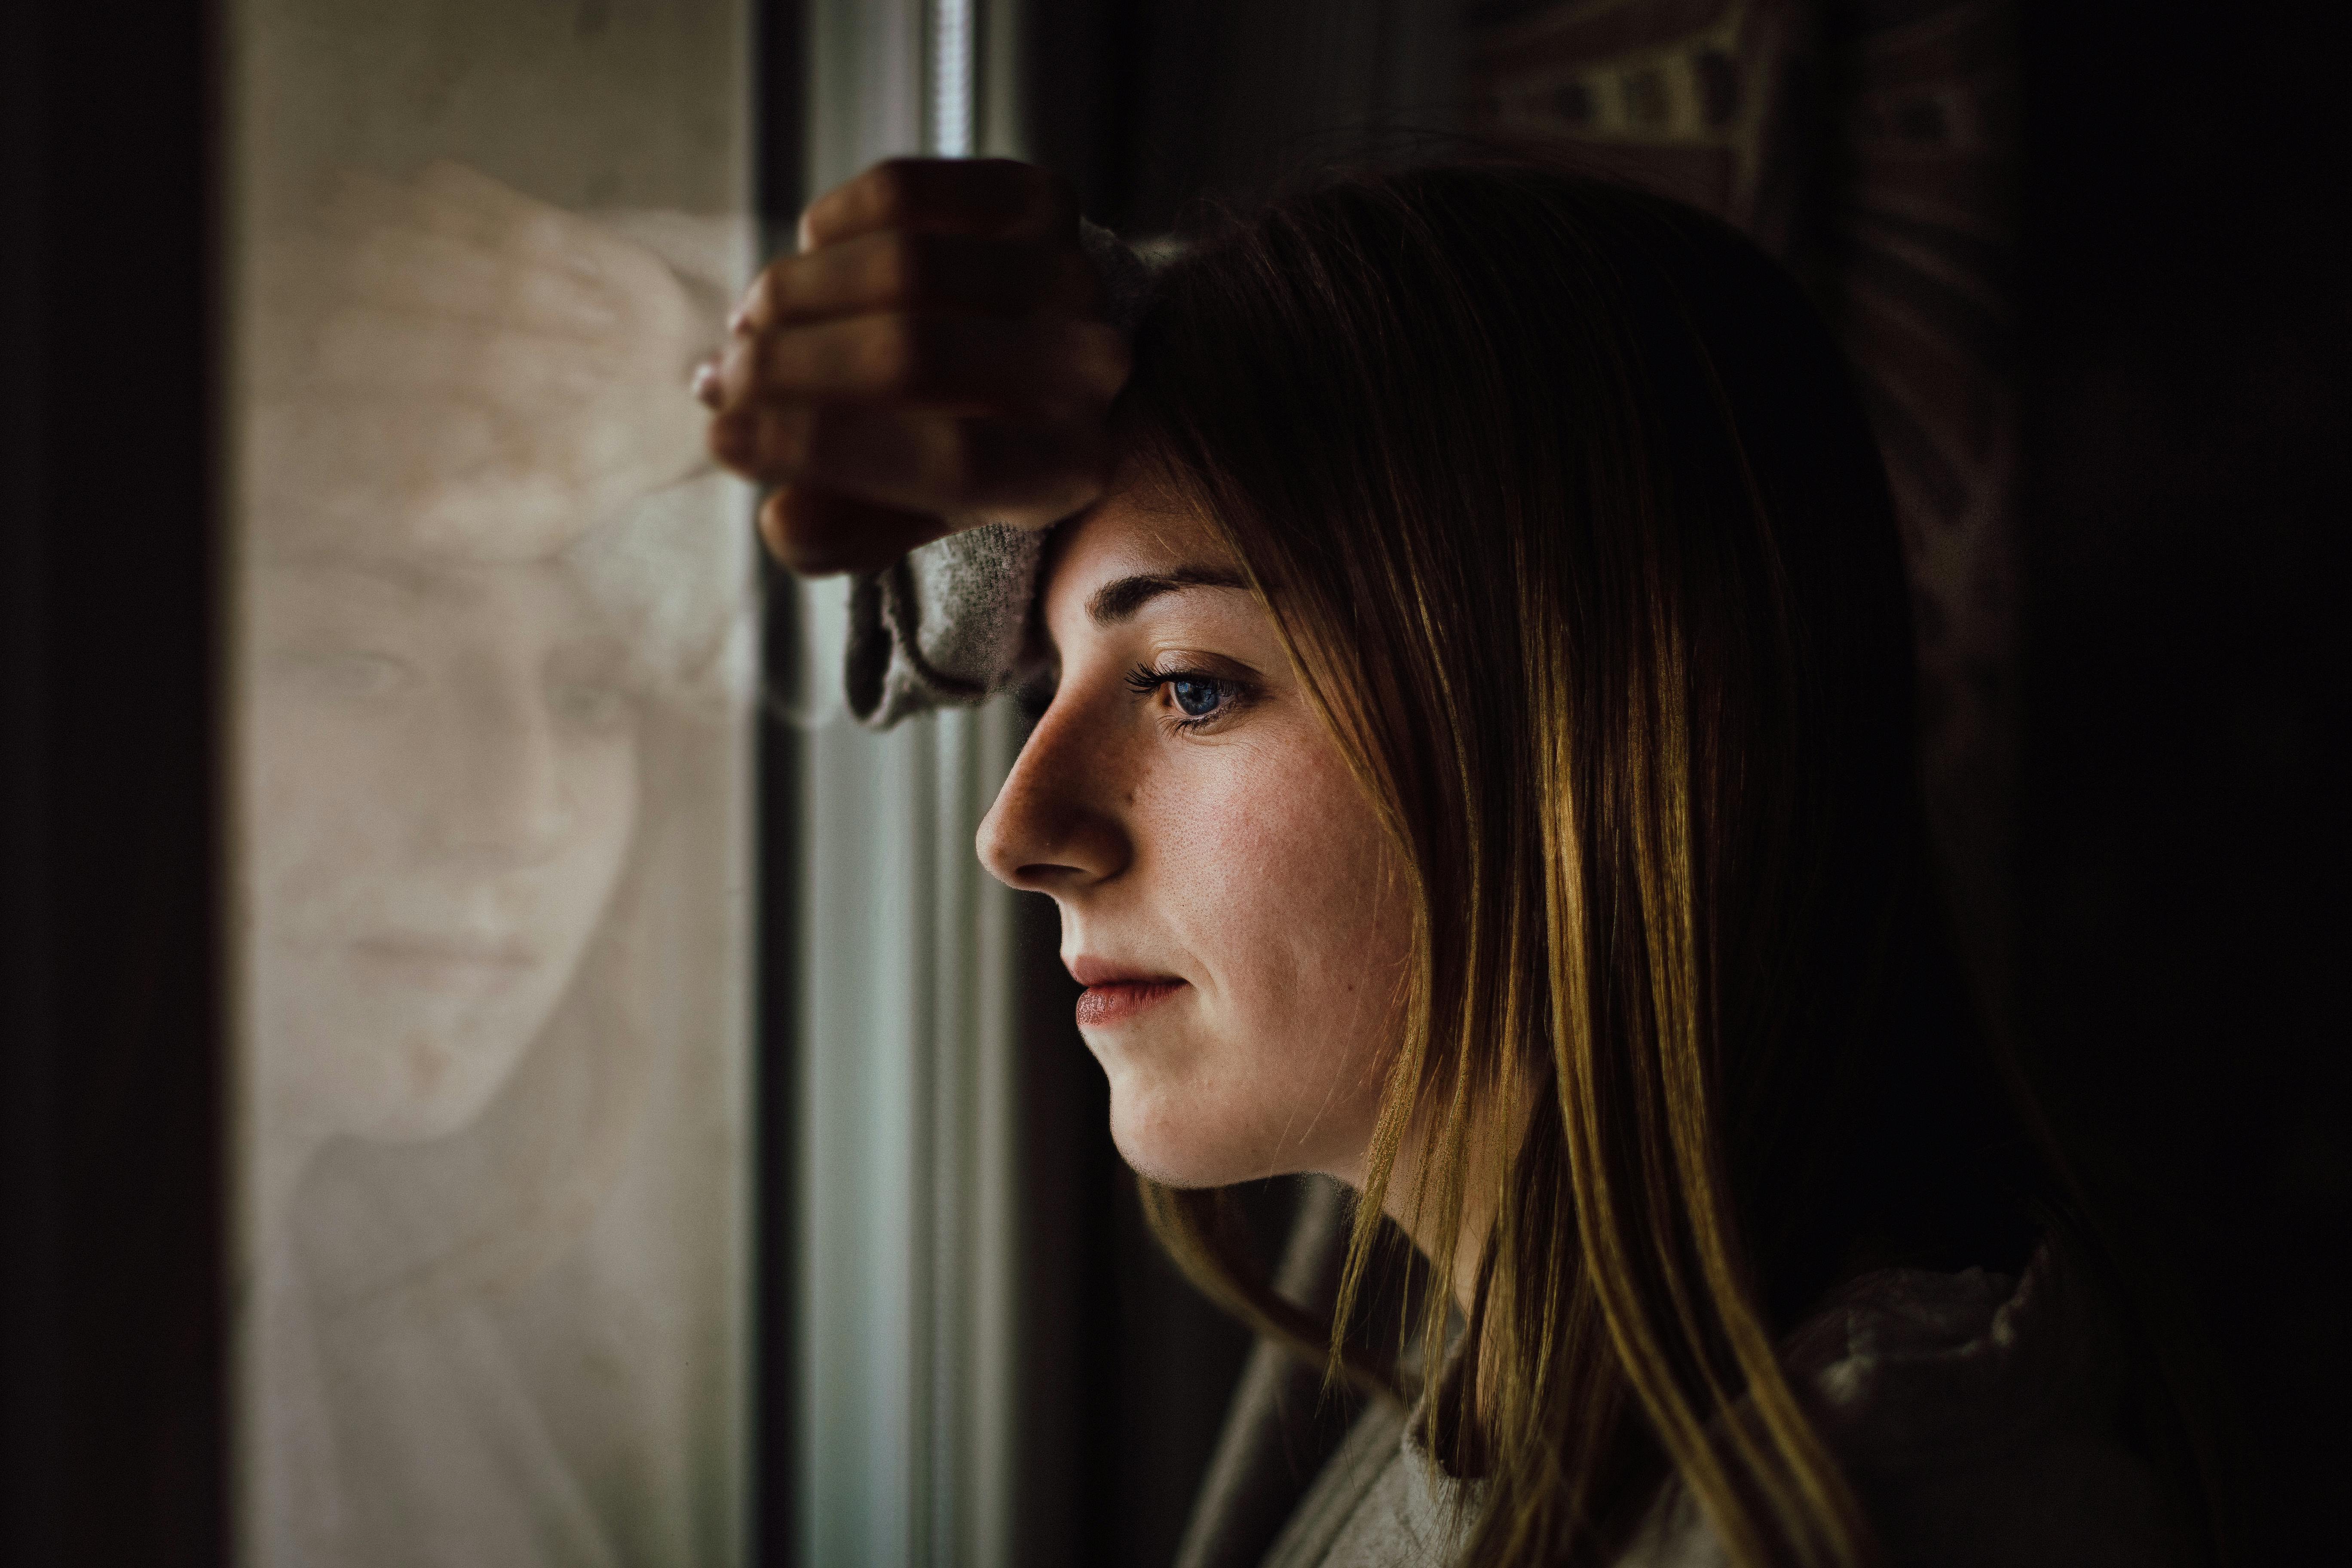 Una mujer contemplando sus actos | Fuente: Pexels